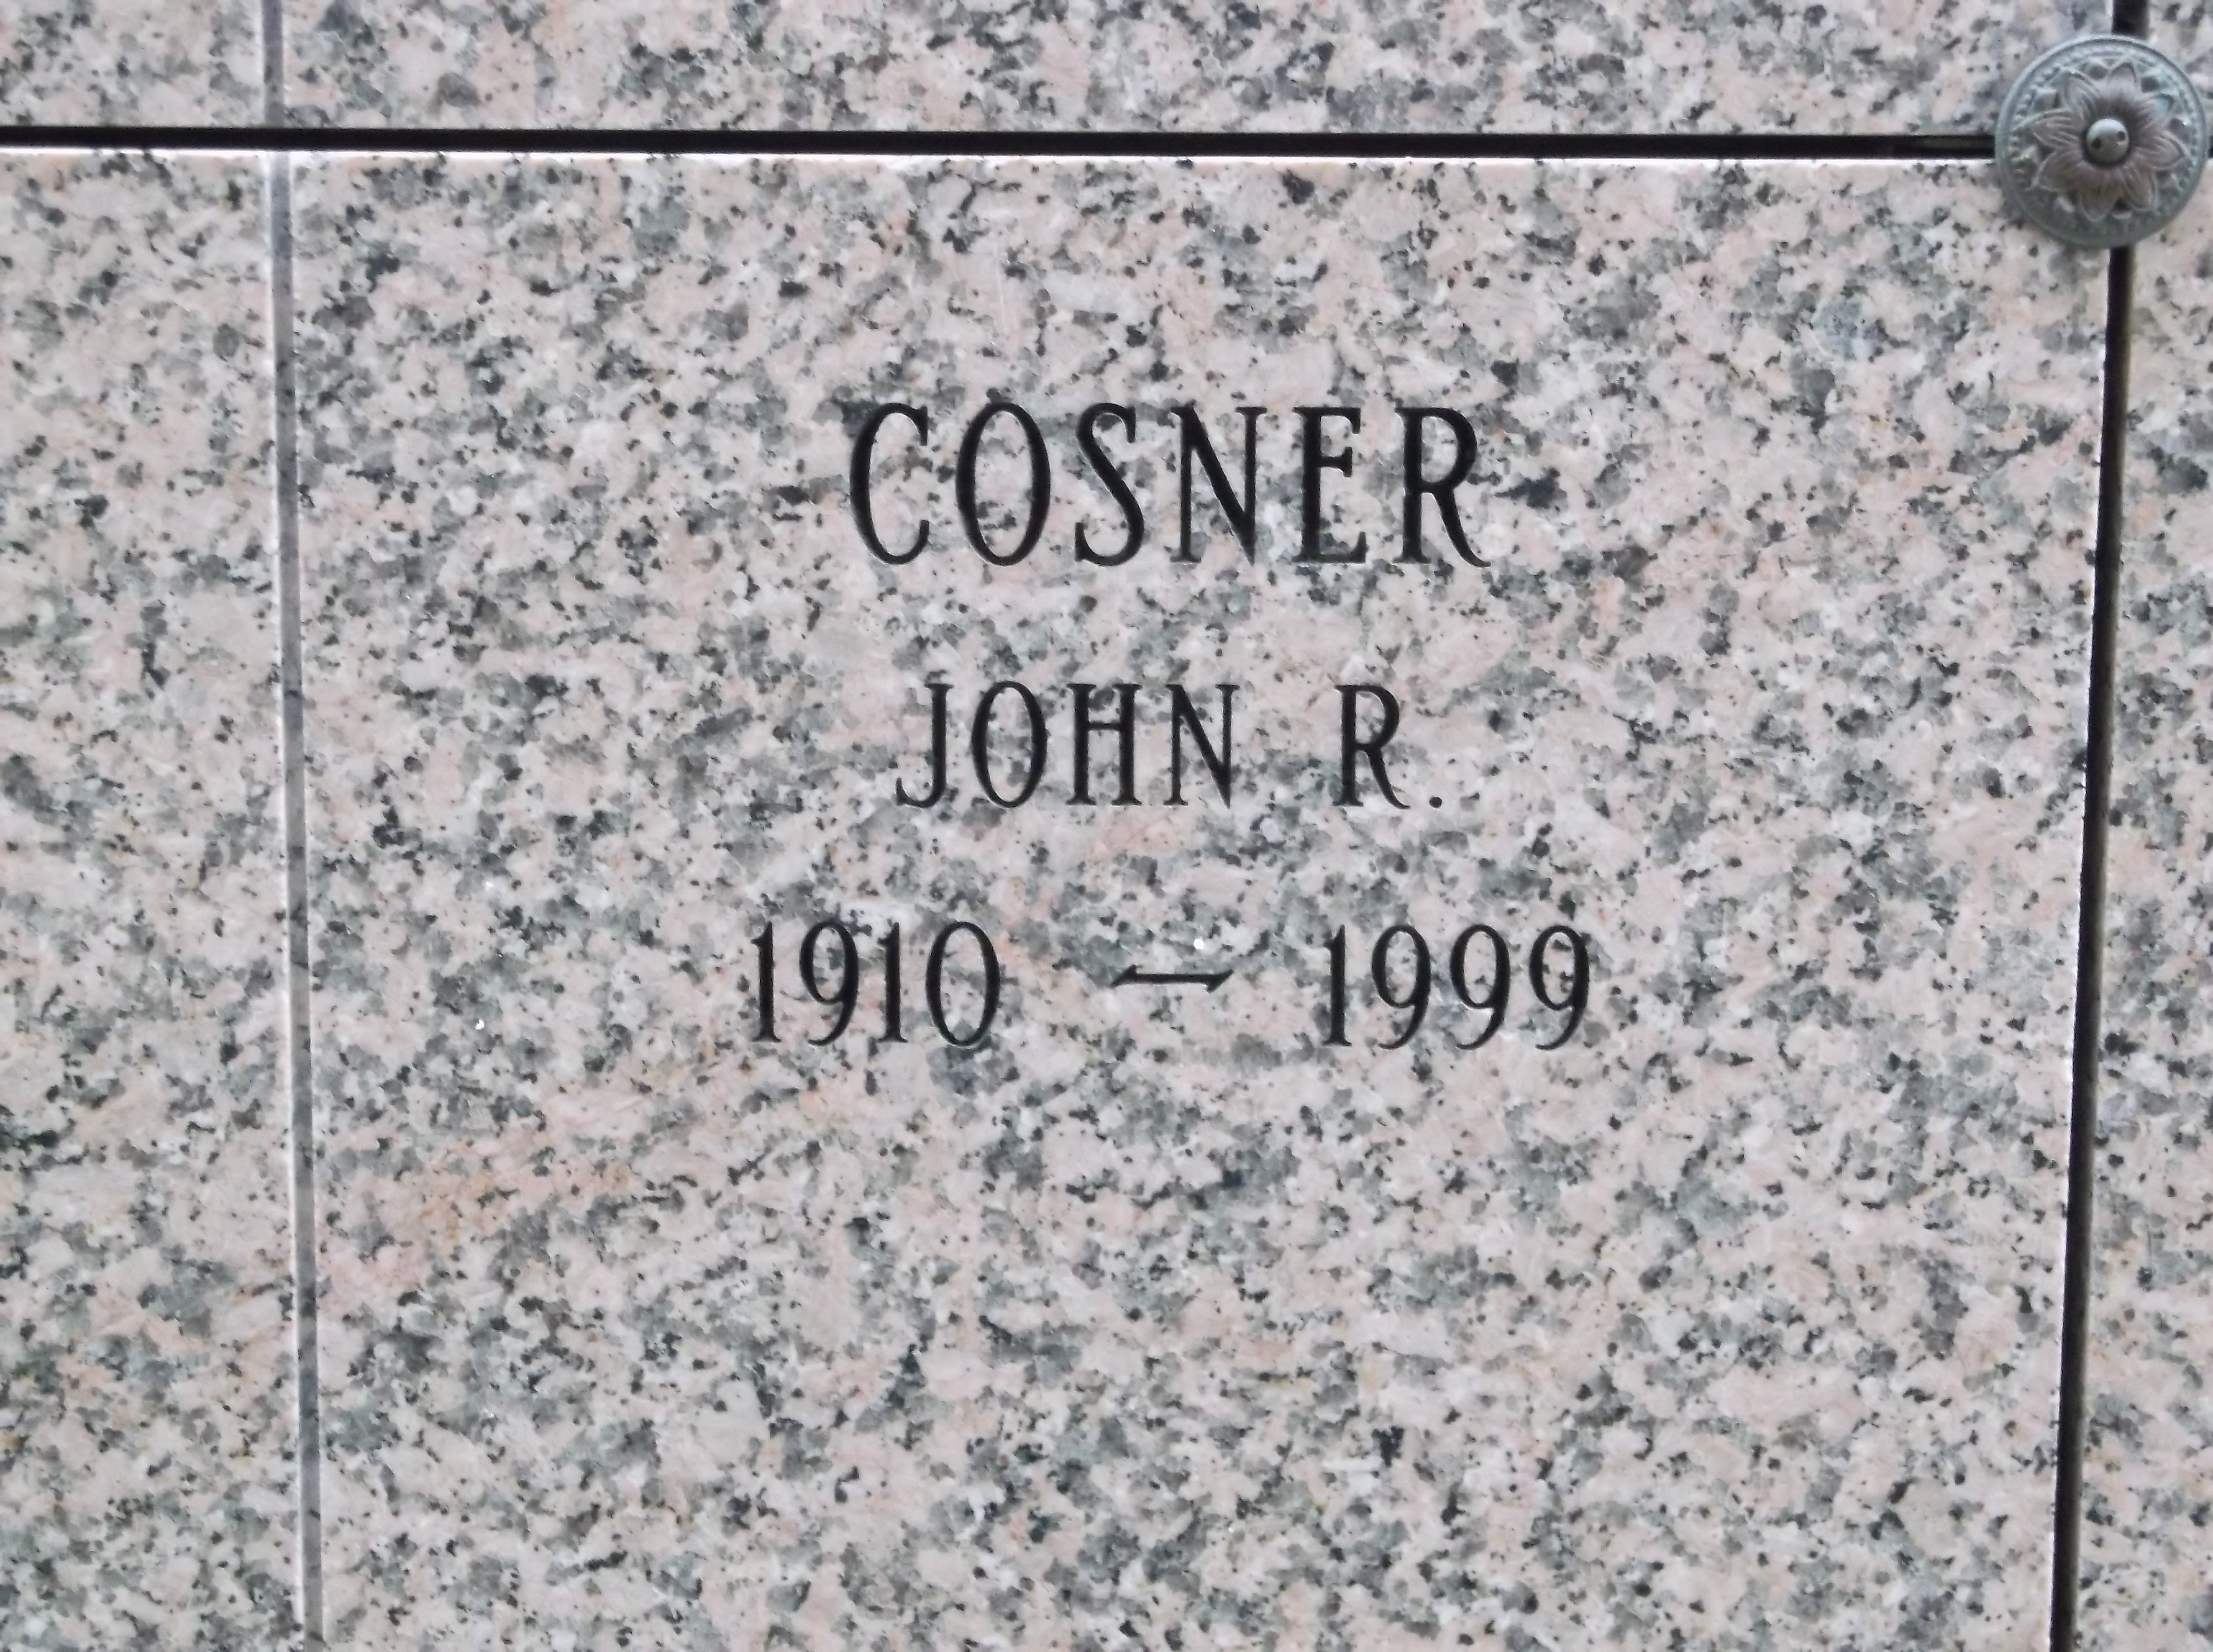 John R Cosner